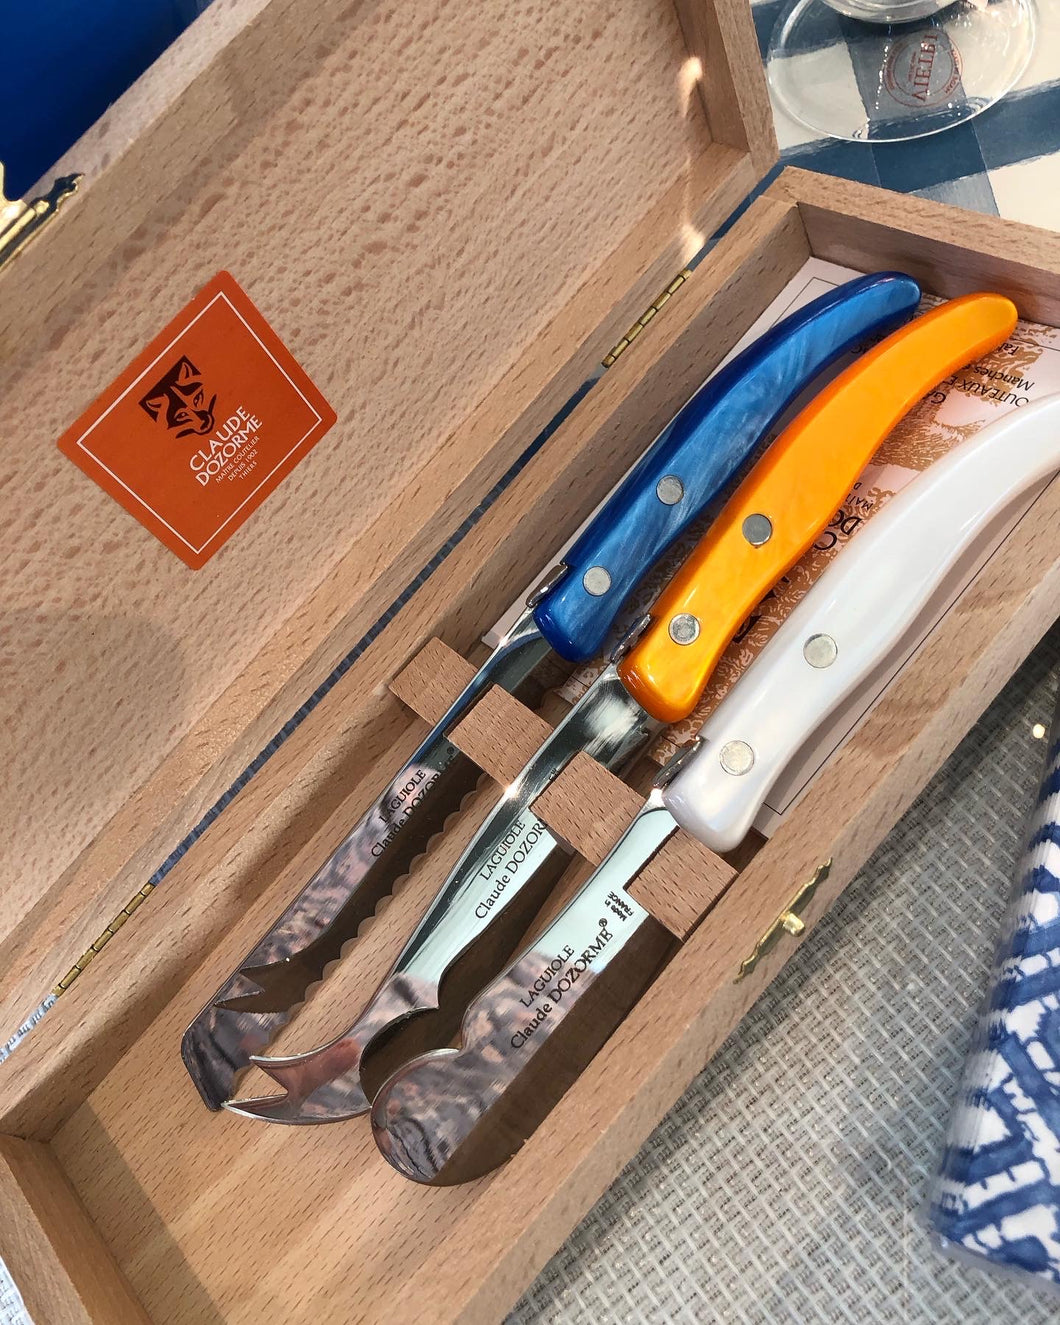 Berlingot Boxed Breakfast Knife Set - White/Orange/Bright Blue - Set of 3 - 7.5